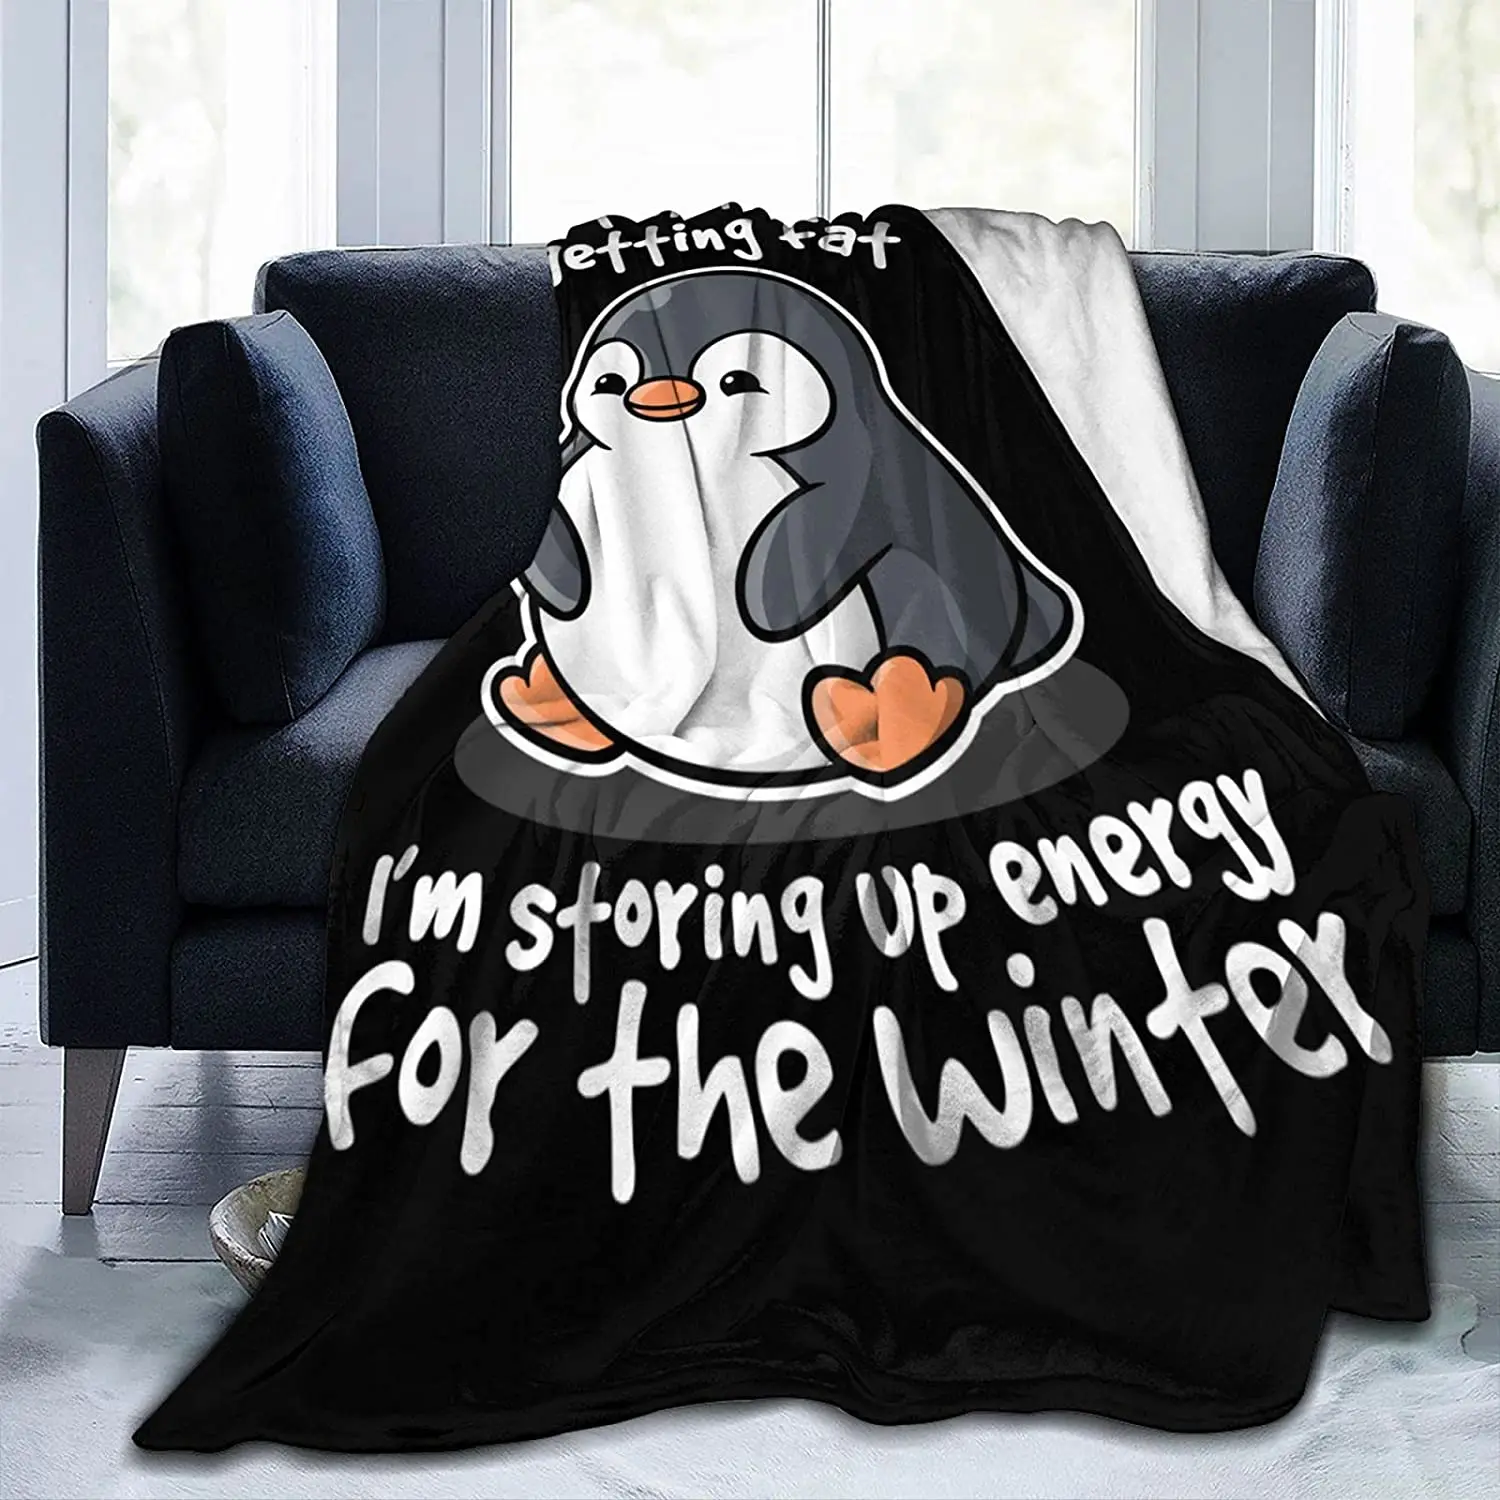 

Одеяло Фланелевое в виде пингвина, удобное мягкое плюшевое покрывало для кровати, дивана, гостиной, для детей и взрослых